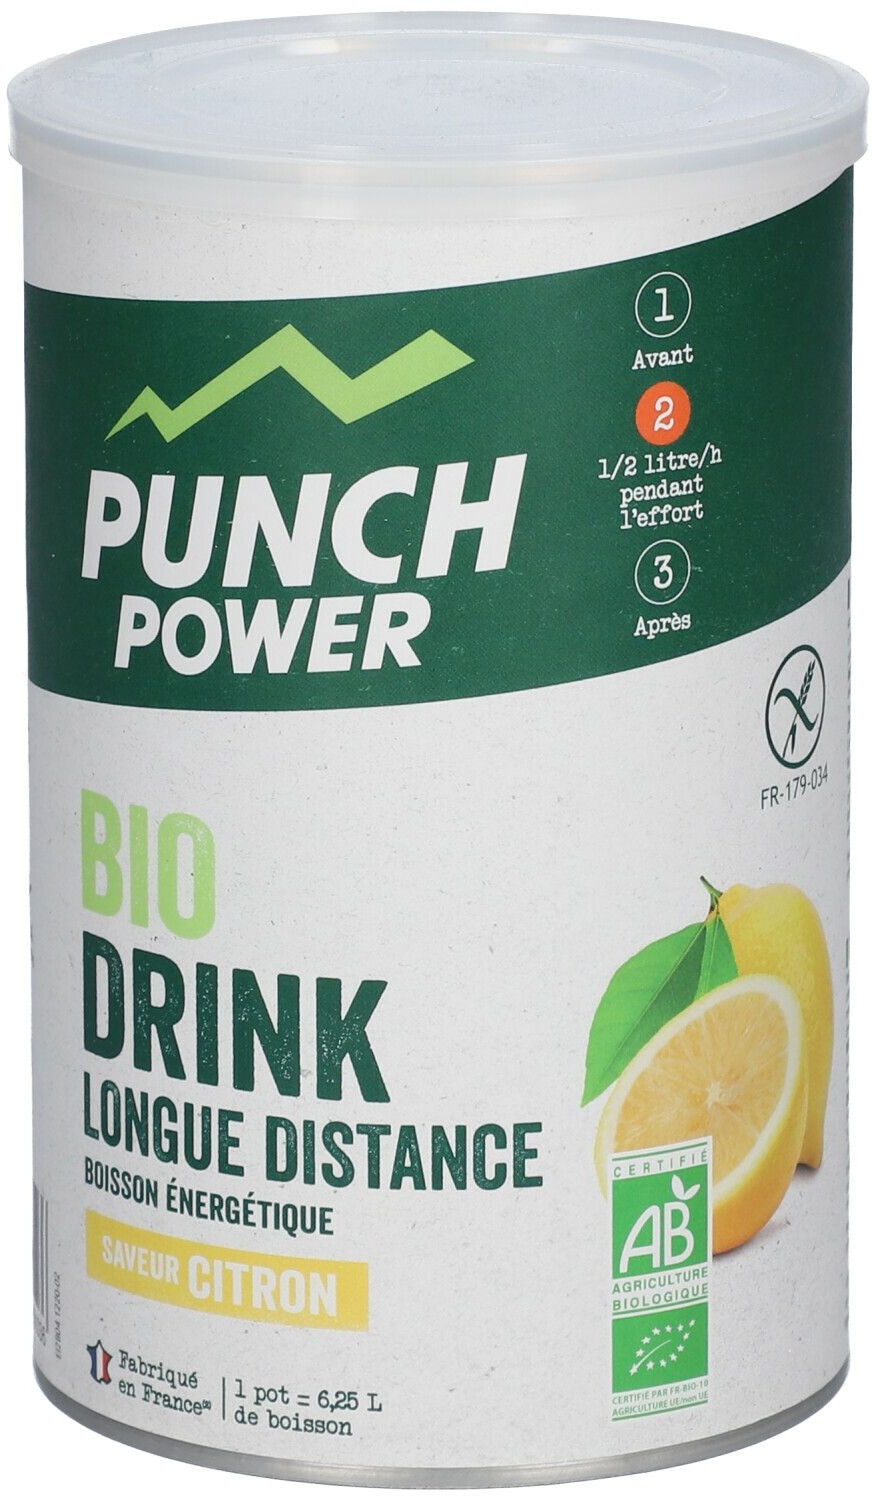 PUNCH POWER Biodrink Longue Distance BIO Citron 500 g Poudre